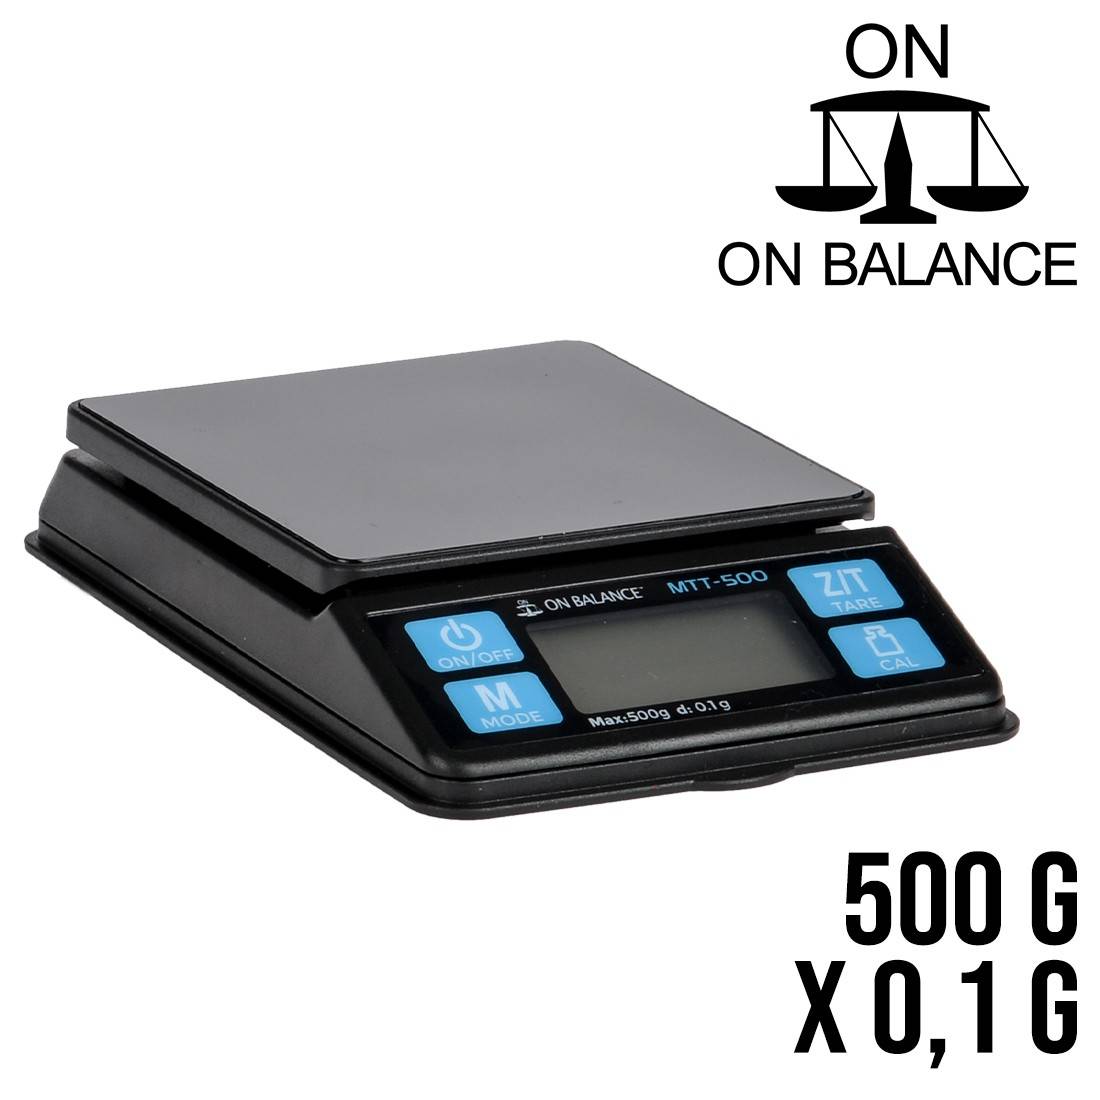 Balanza Portátil de Bolsillo On Balance MTT-500